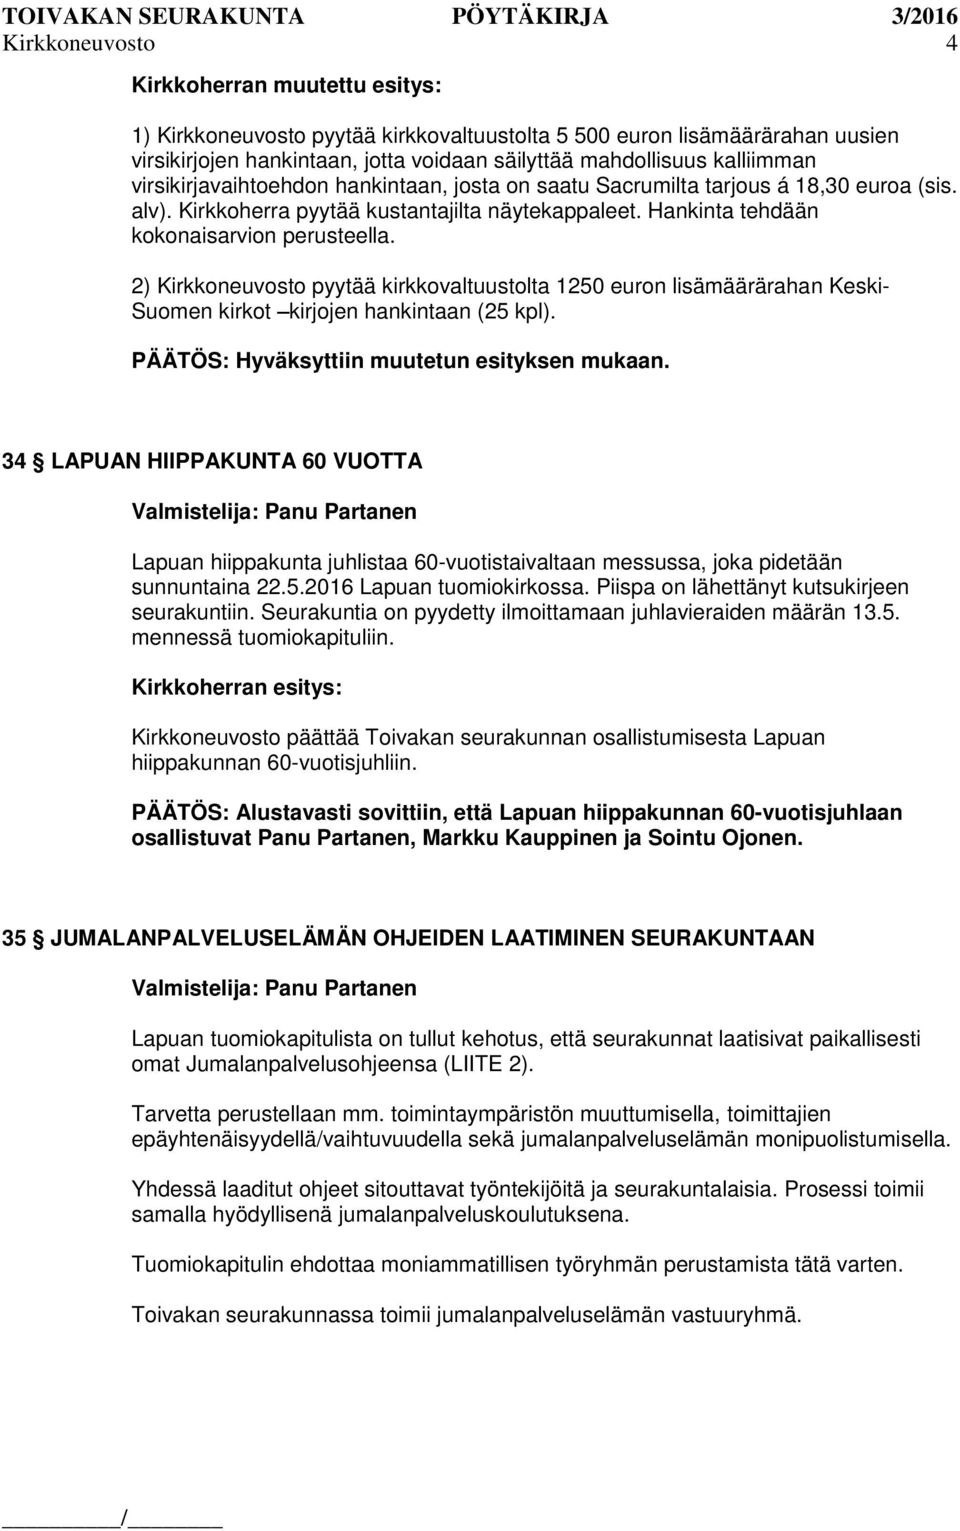 2) Kirkkoneuvosto pyytää kirkkovaltuustolta 1250 euron lisämäärärahan Keski- Suomen kirkot kirjojen hankintaan (25 kpl). PÄÄTÖS: Hyväksyttiin muutetun esityksen mukaan.